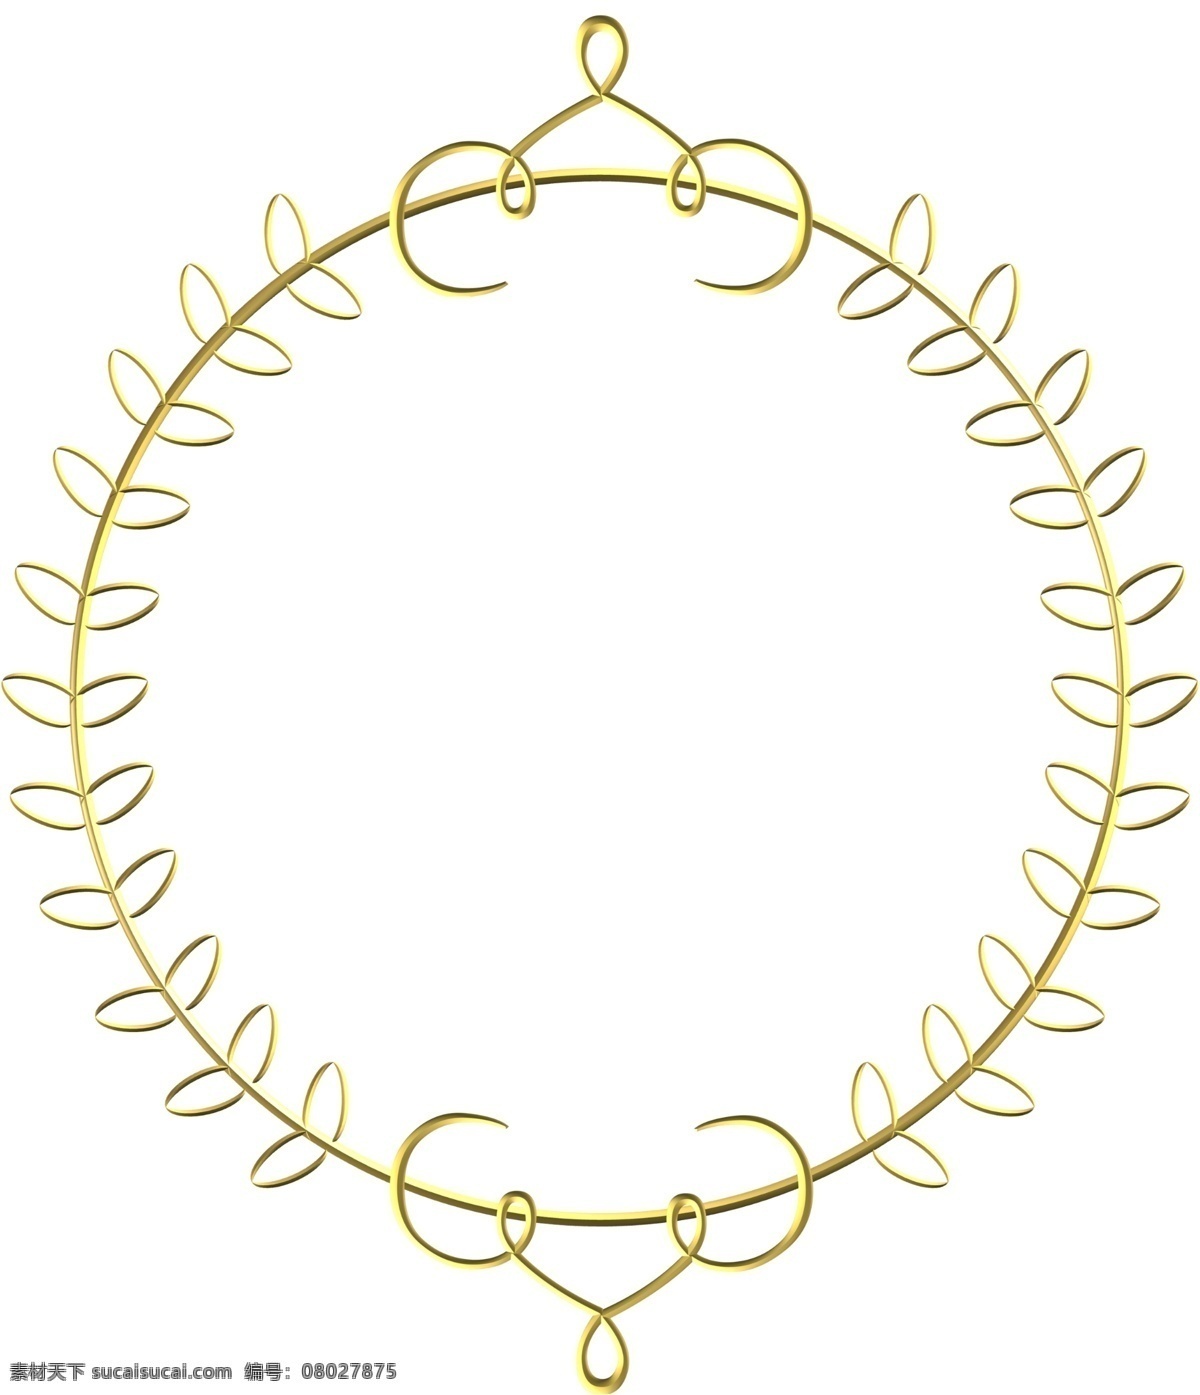 金色圆环饰品 金色 金属 饰品 图案 珠宝 标志图标 其他图标